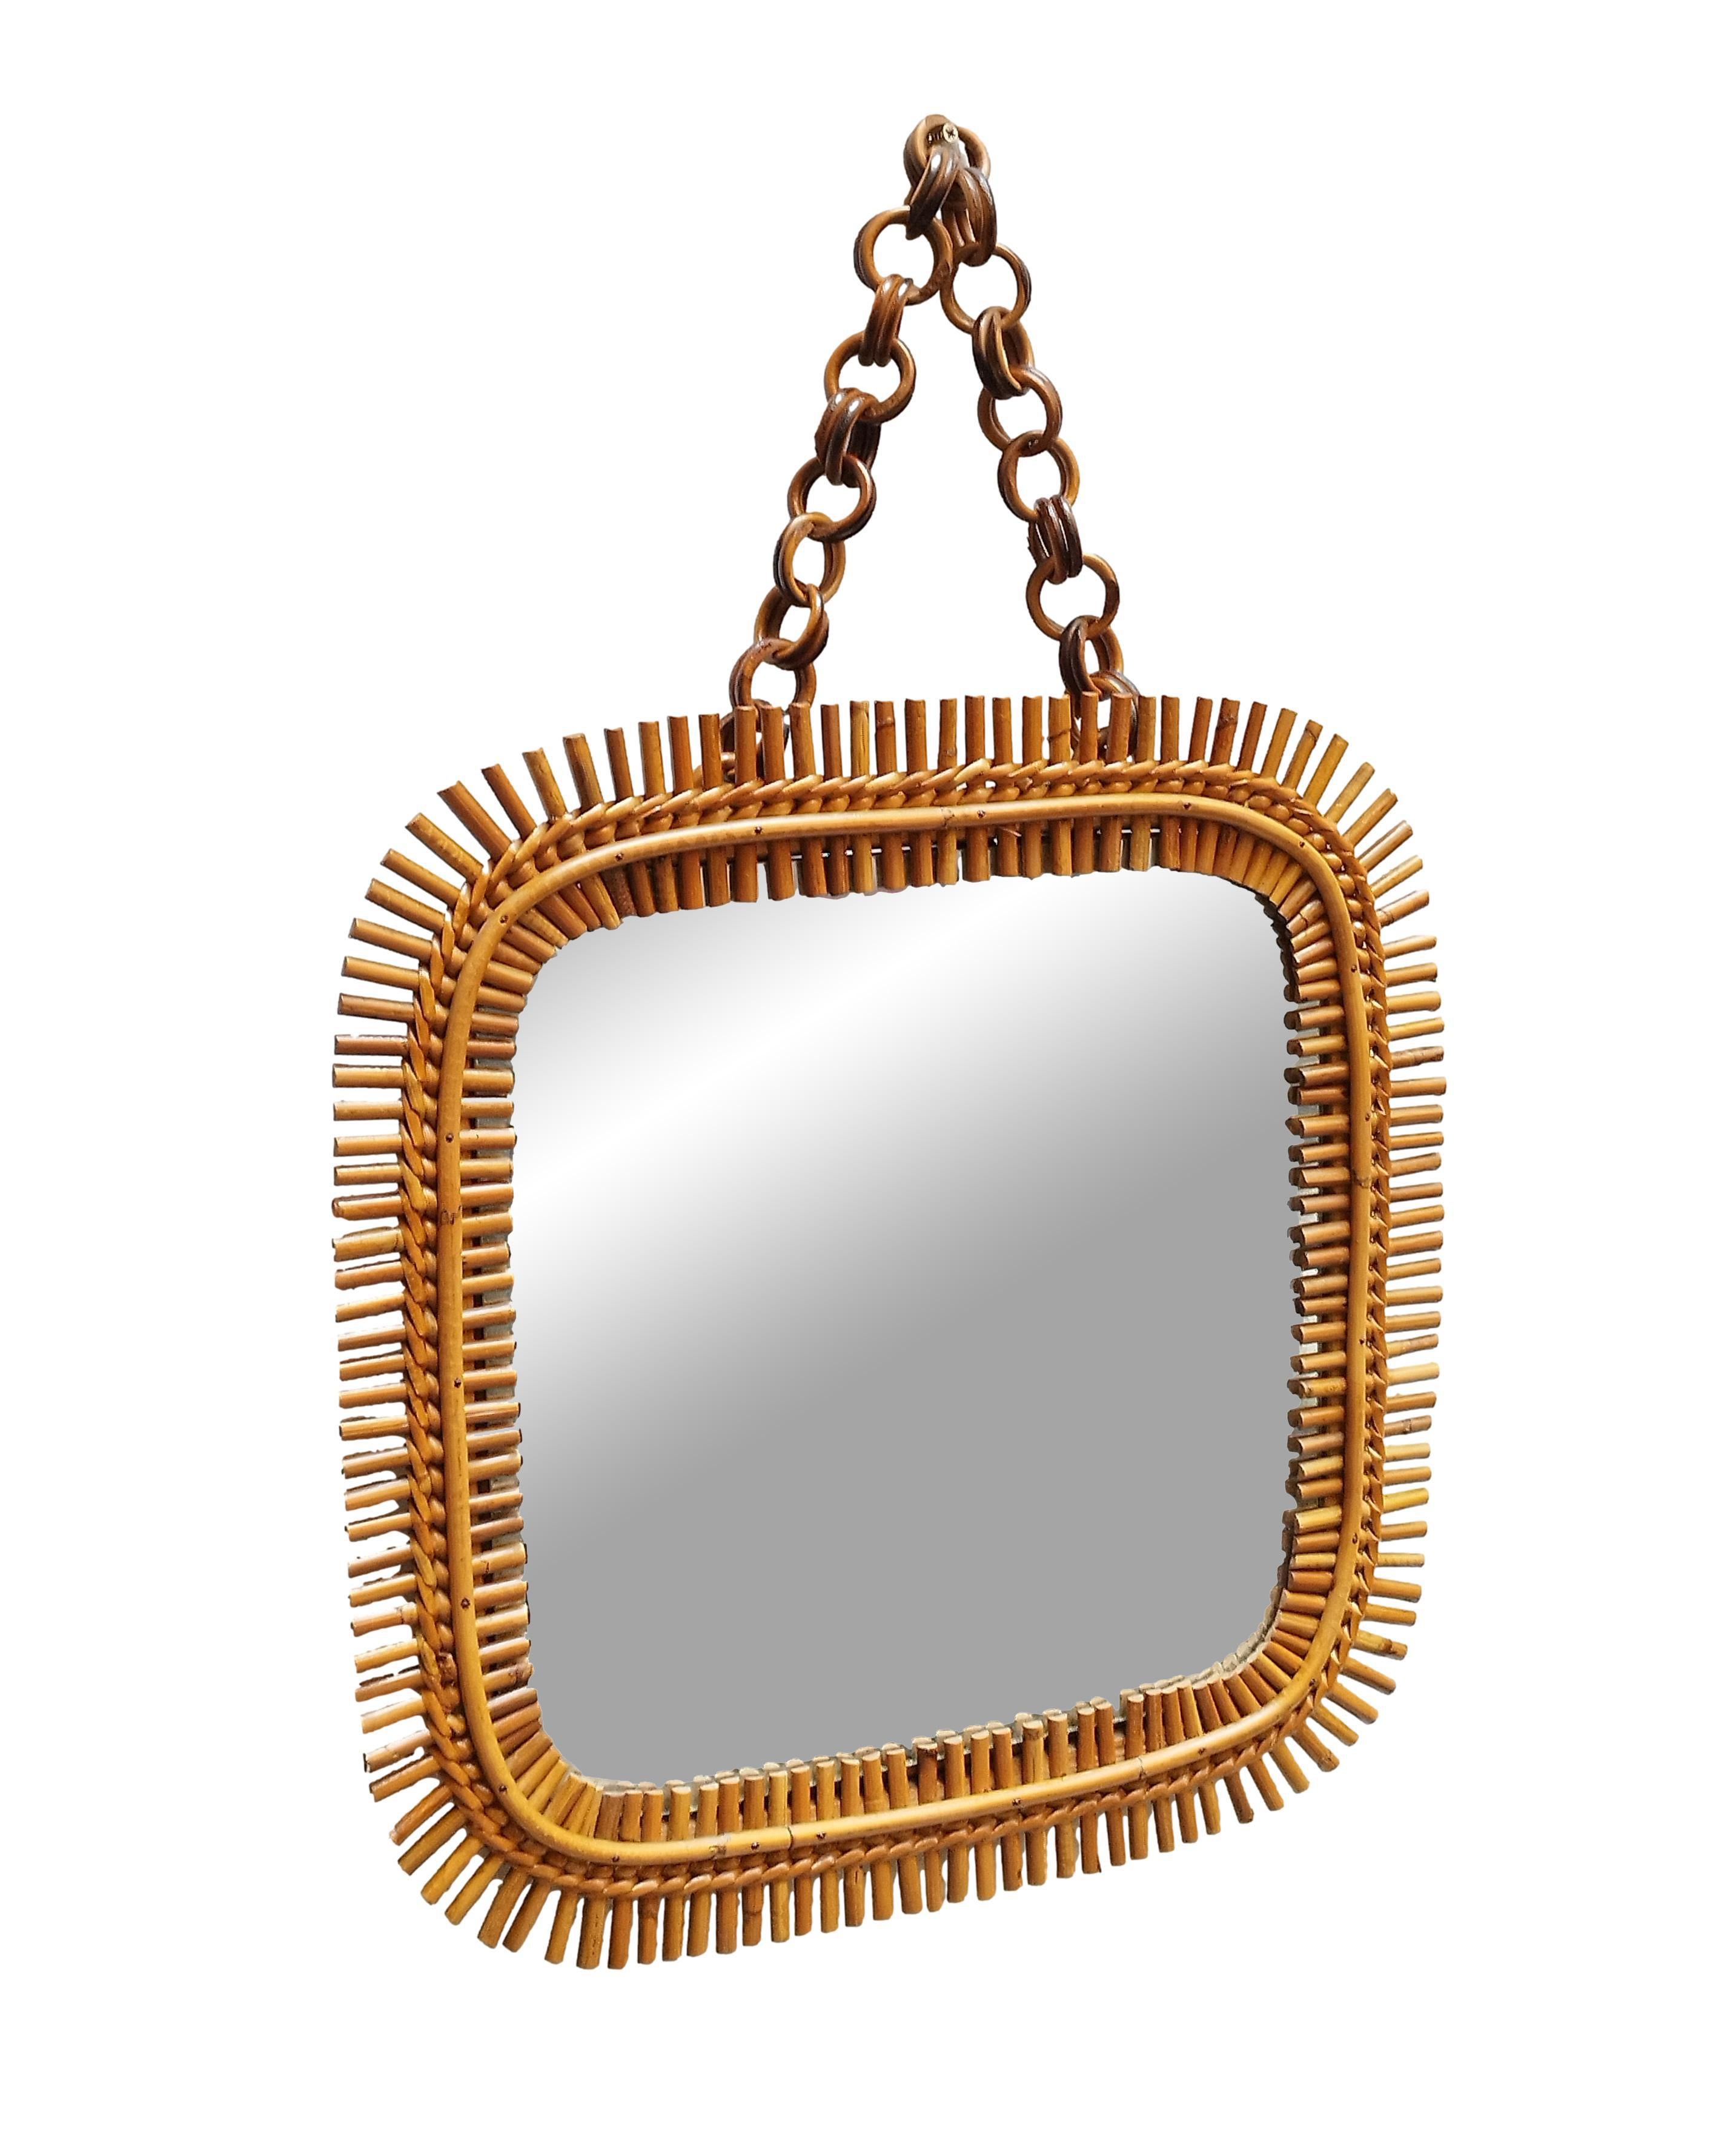 Viereckiger Spiegel, hergestellt in Italien in den 1960er Jahren.
Der Spiegel ist original aus der Zeit, in der Tat zeigt es leichte Anzeichen von Oxidation. Dünne Binsenstreifen, die sich alle voneinander unterscheiden, werden mit Rattan zu einem